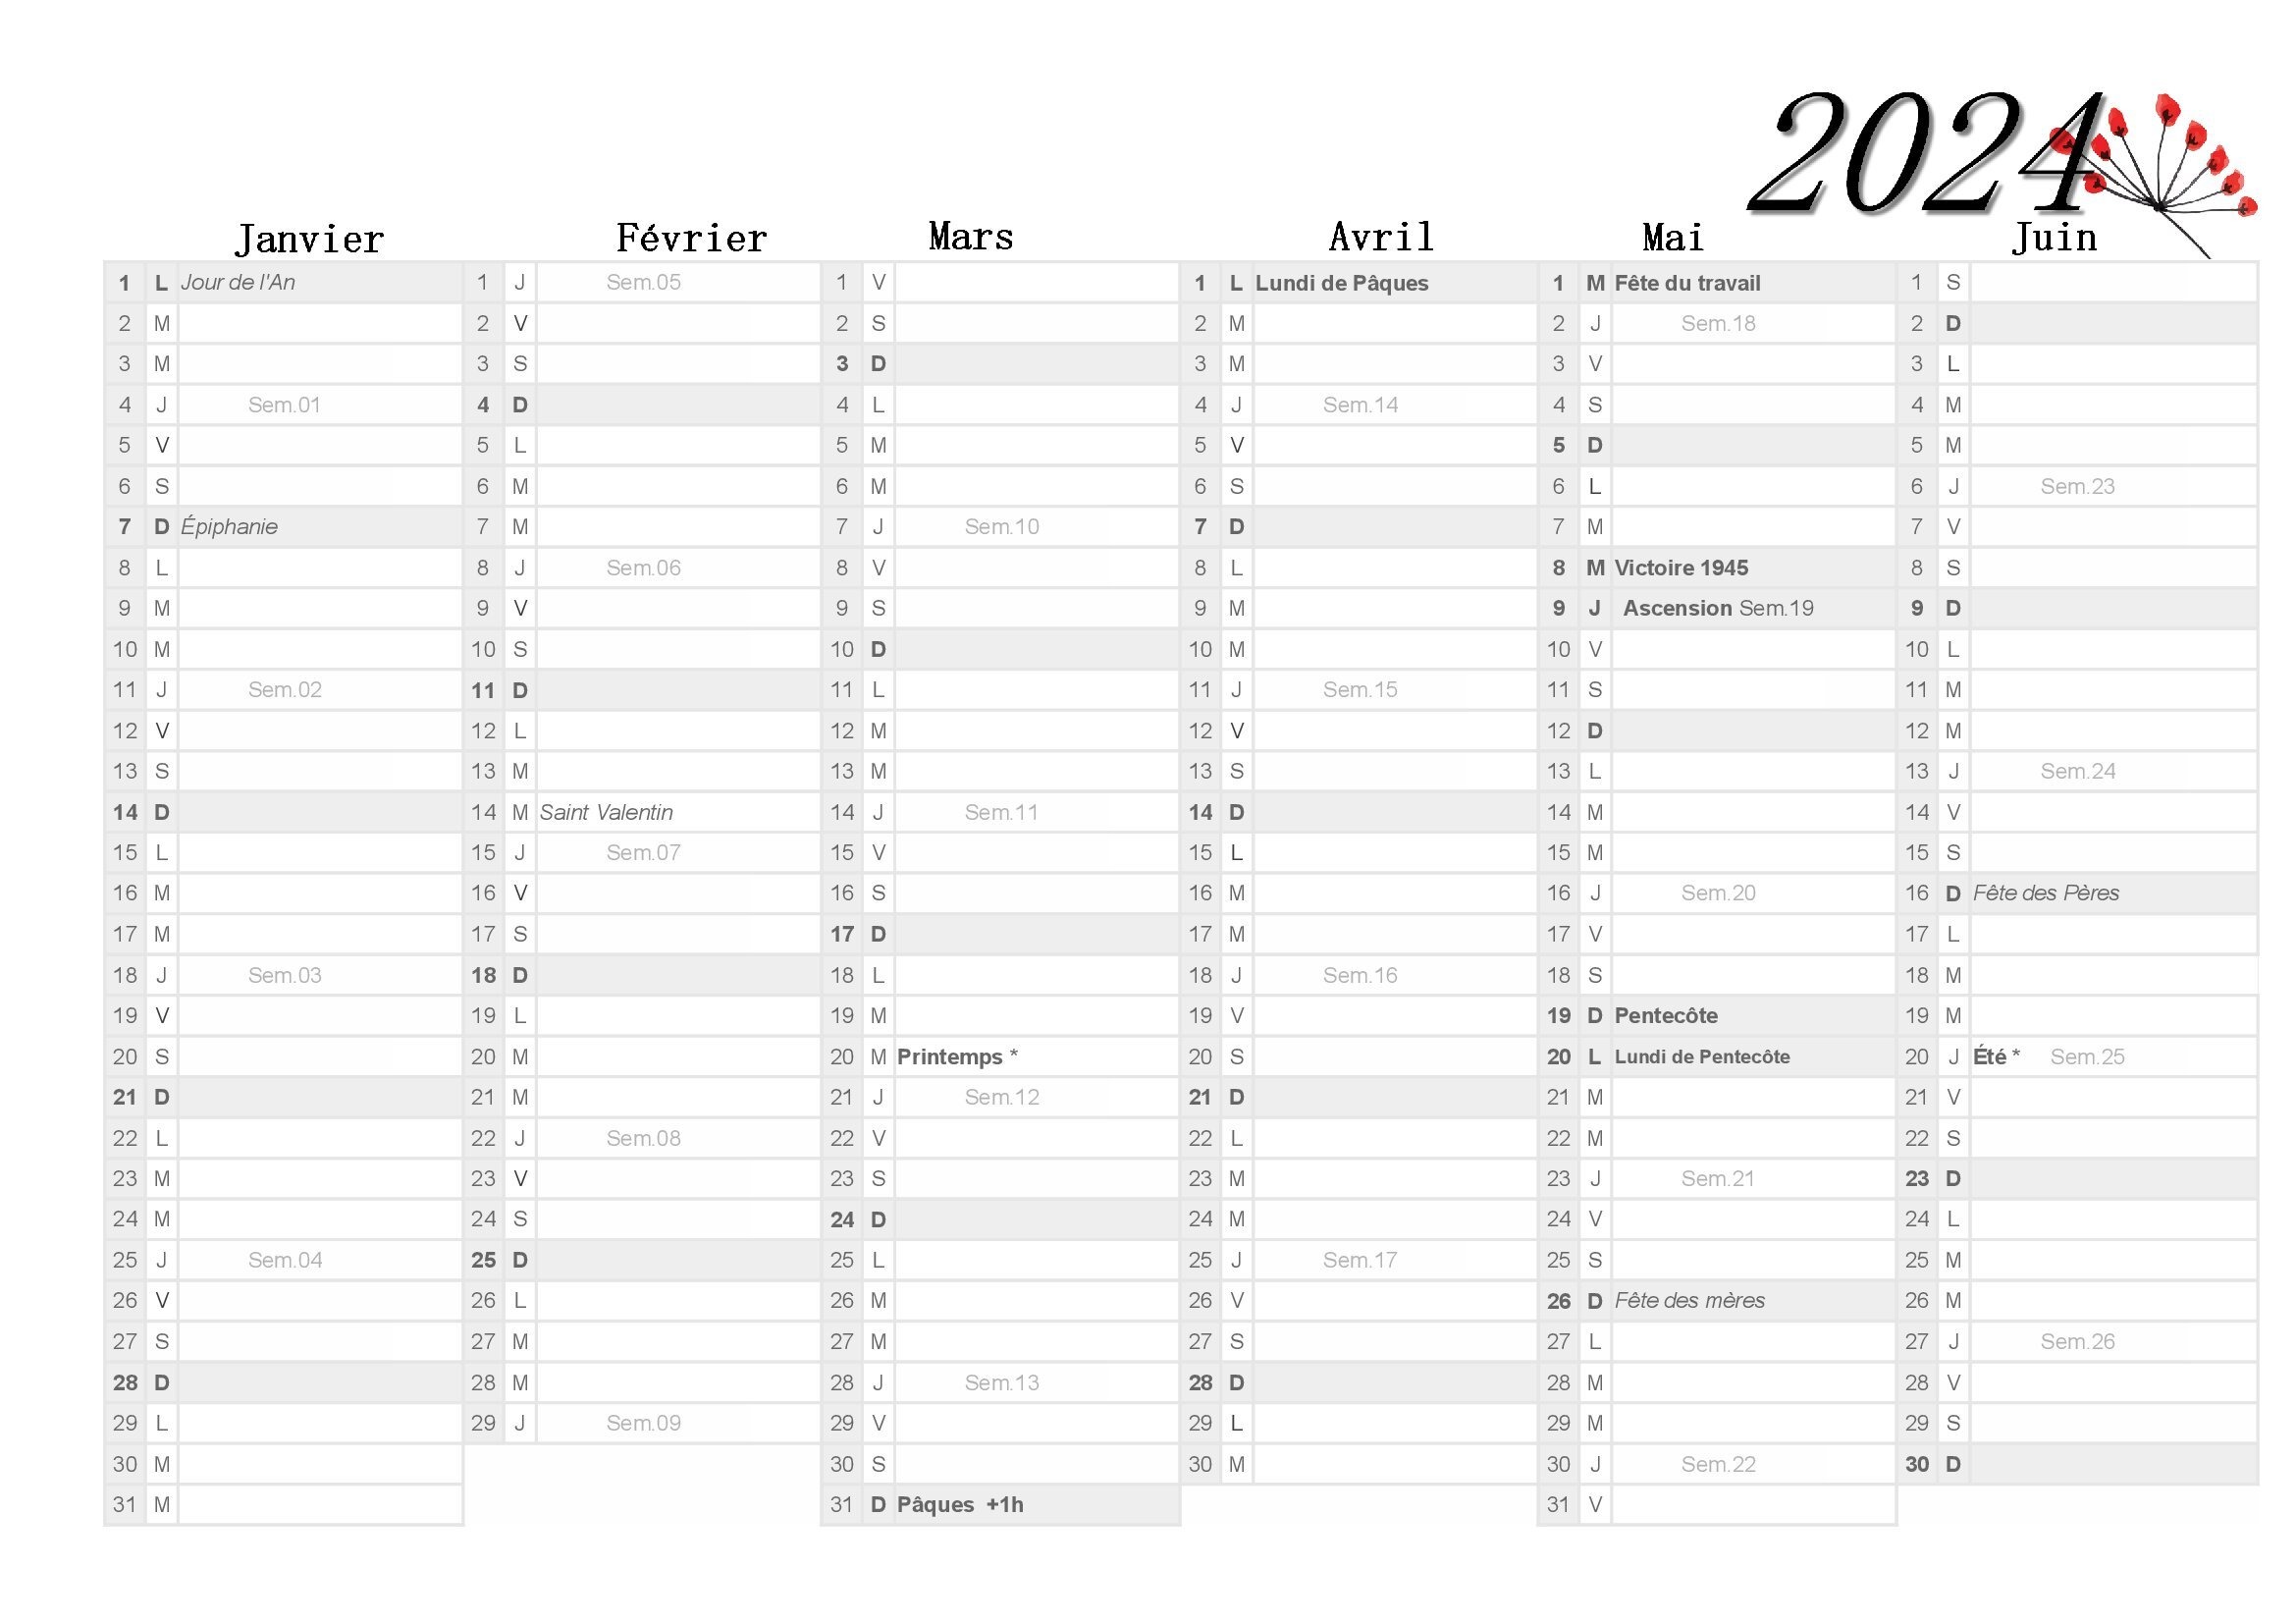 Janvier 2024 calendrier gratuit à imprimer au format A4